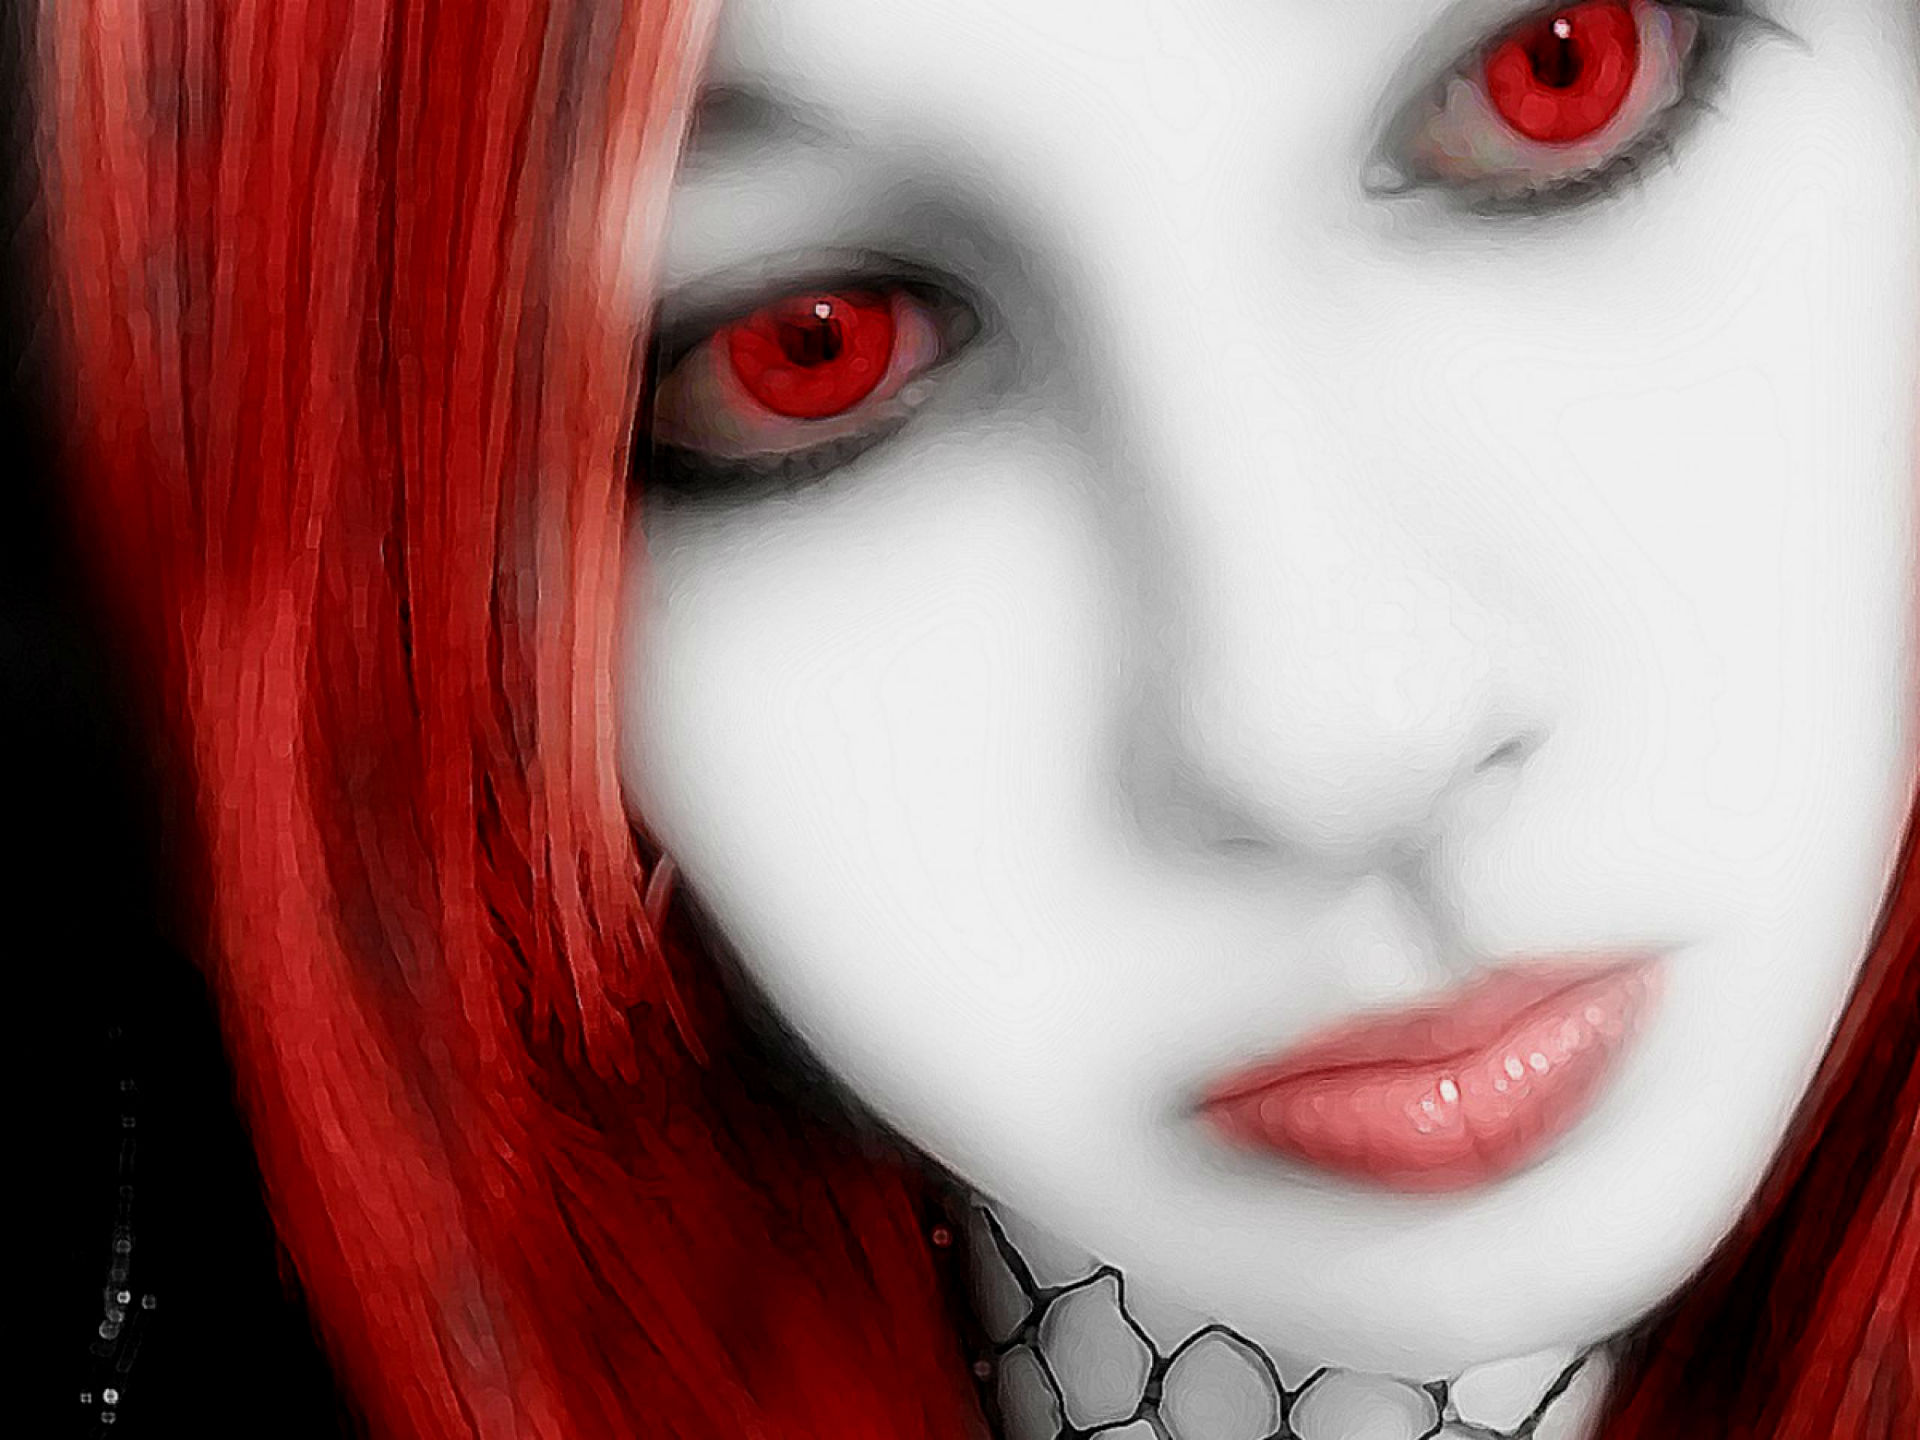 vampire wallpaper,hair,face,red,lip,eyebrow